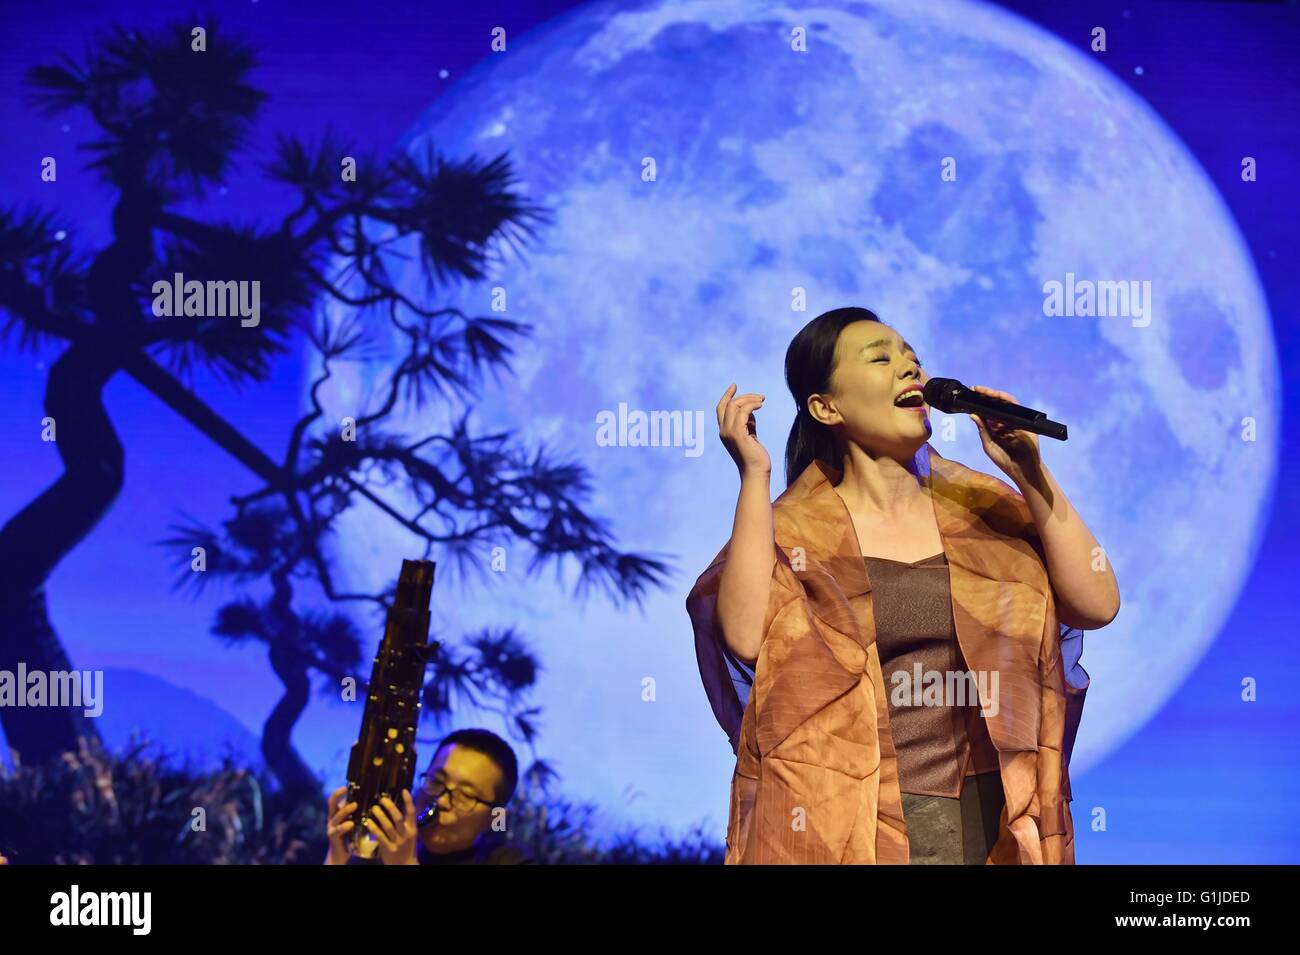 Beijing, Chine. 16 mai, 2016. La chanteuse Gong Linna chante la chanson 'une nuit tranquille" pendant l'ouverture du collège de Beijing 2016 Étudiants Festival de musique au Conservatoire de musique de Chine à Beijing, capitale de Chine, le 16 mai 2016. "La jeunesse, campus, l'art et la vie" est le thème de la fête de la musique, qui durera jusqu'à la fin de l'année. Performances de différentes catégories musicales seront données à 19 universités et collèges. © Li Wen/Xinhua/Alamy Live News Banque D'Images